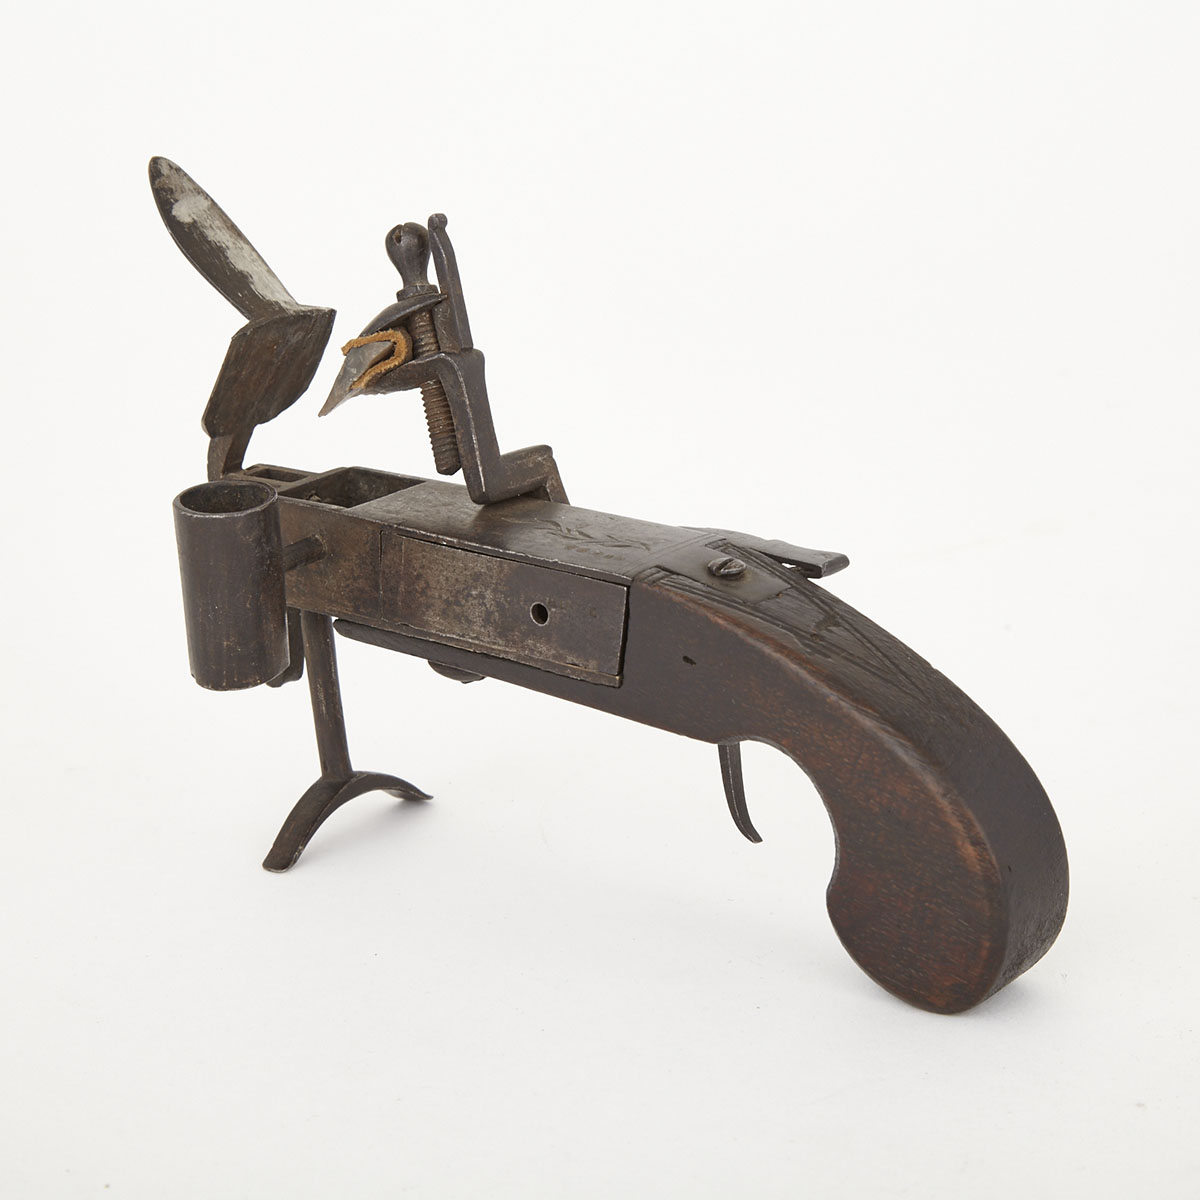 English Pistol Form Flintlock Tinder Lighter, 18th century